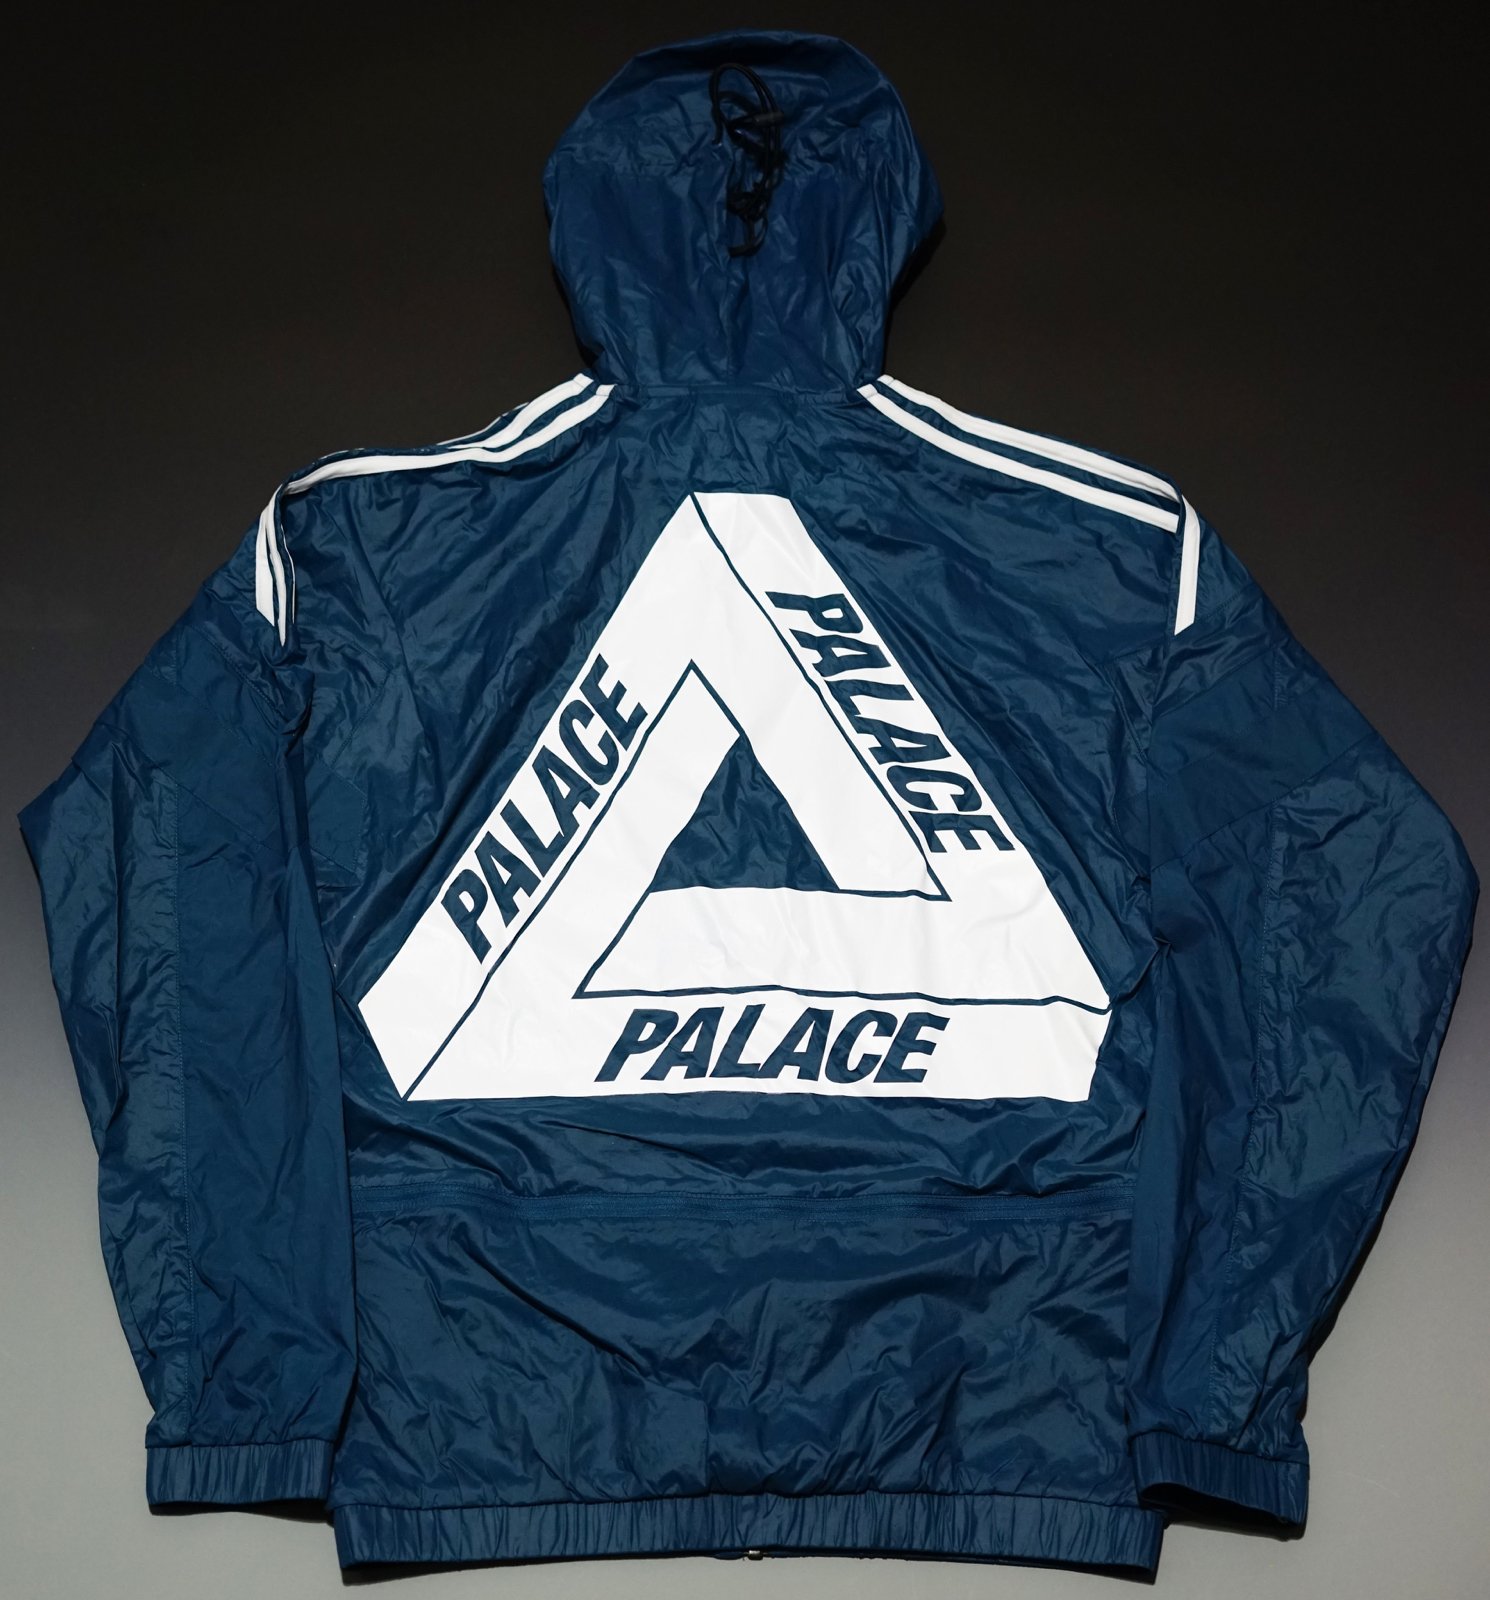 palace  adidas jacket